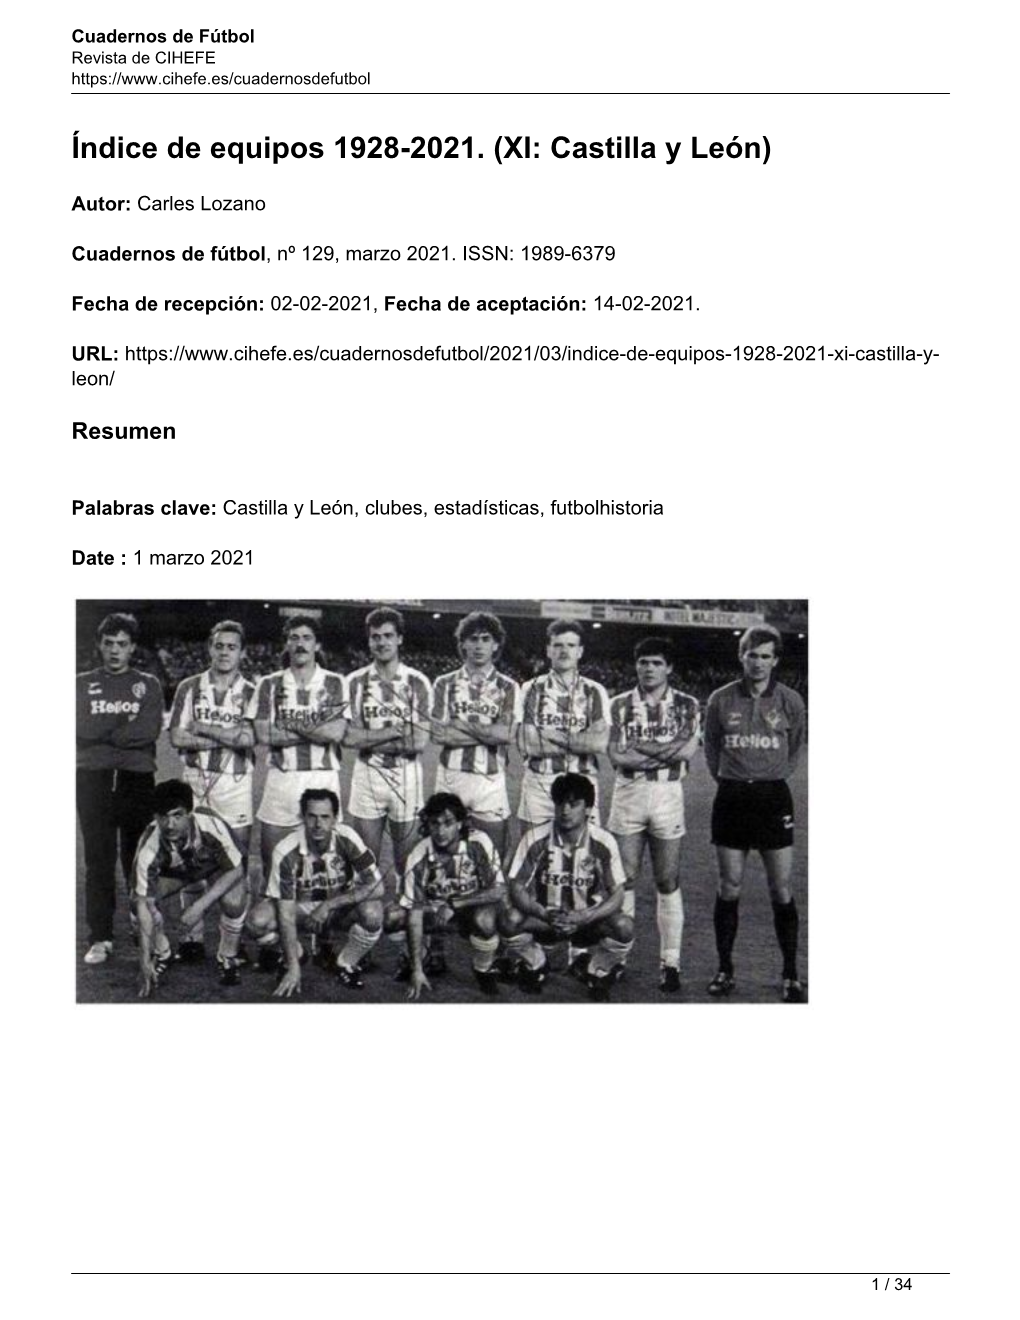 Índice De Equipos 1928-2021. (XI: Castilla Y León)